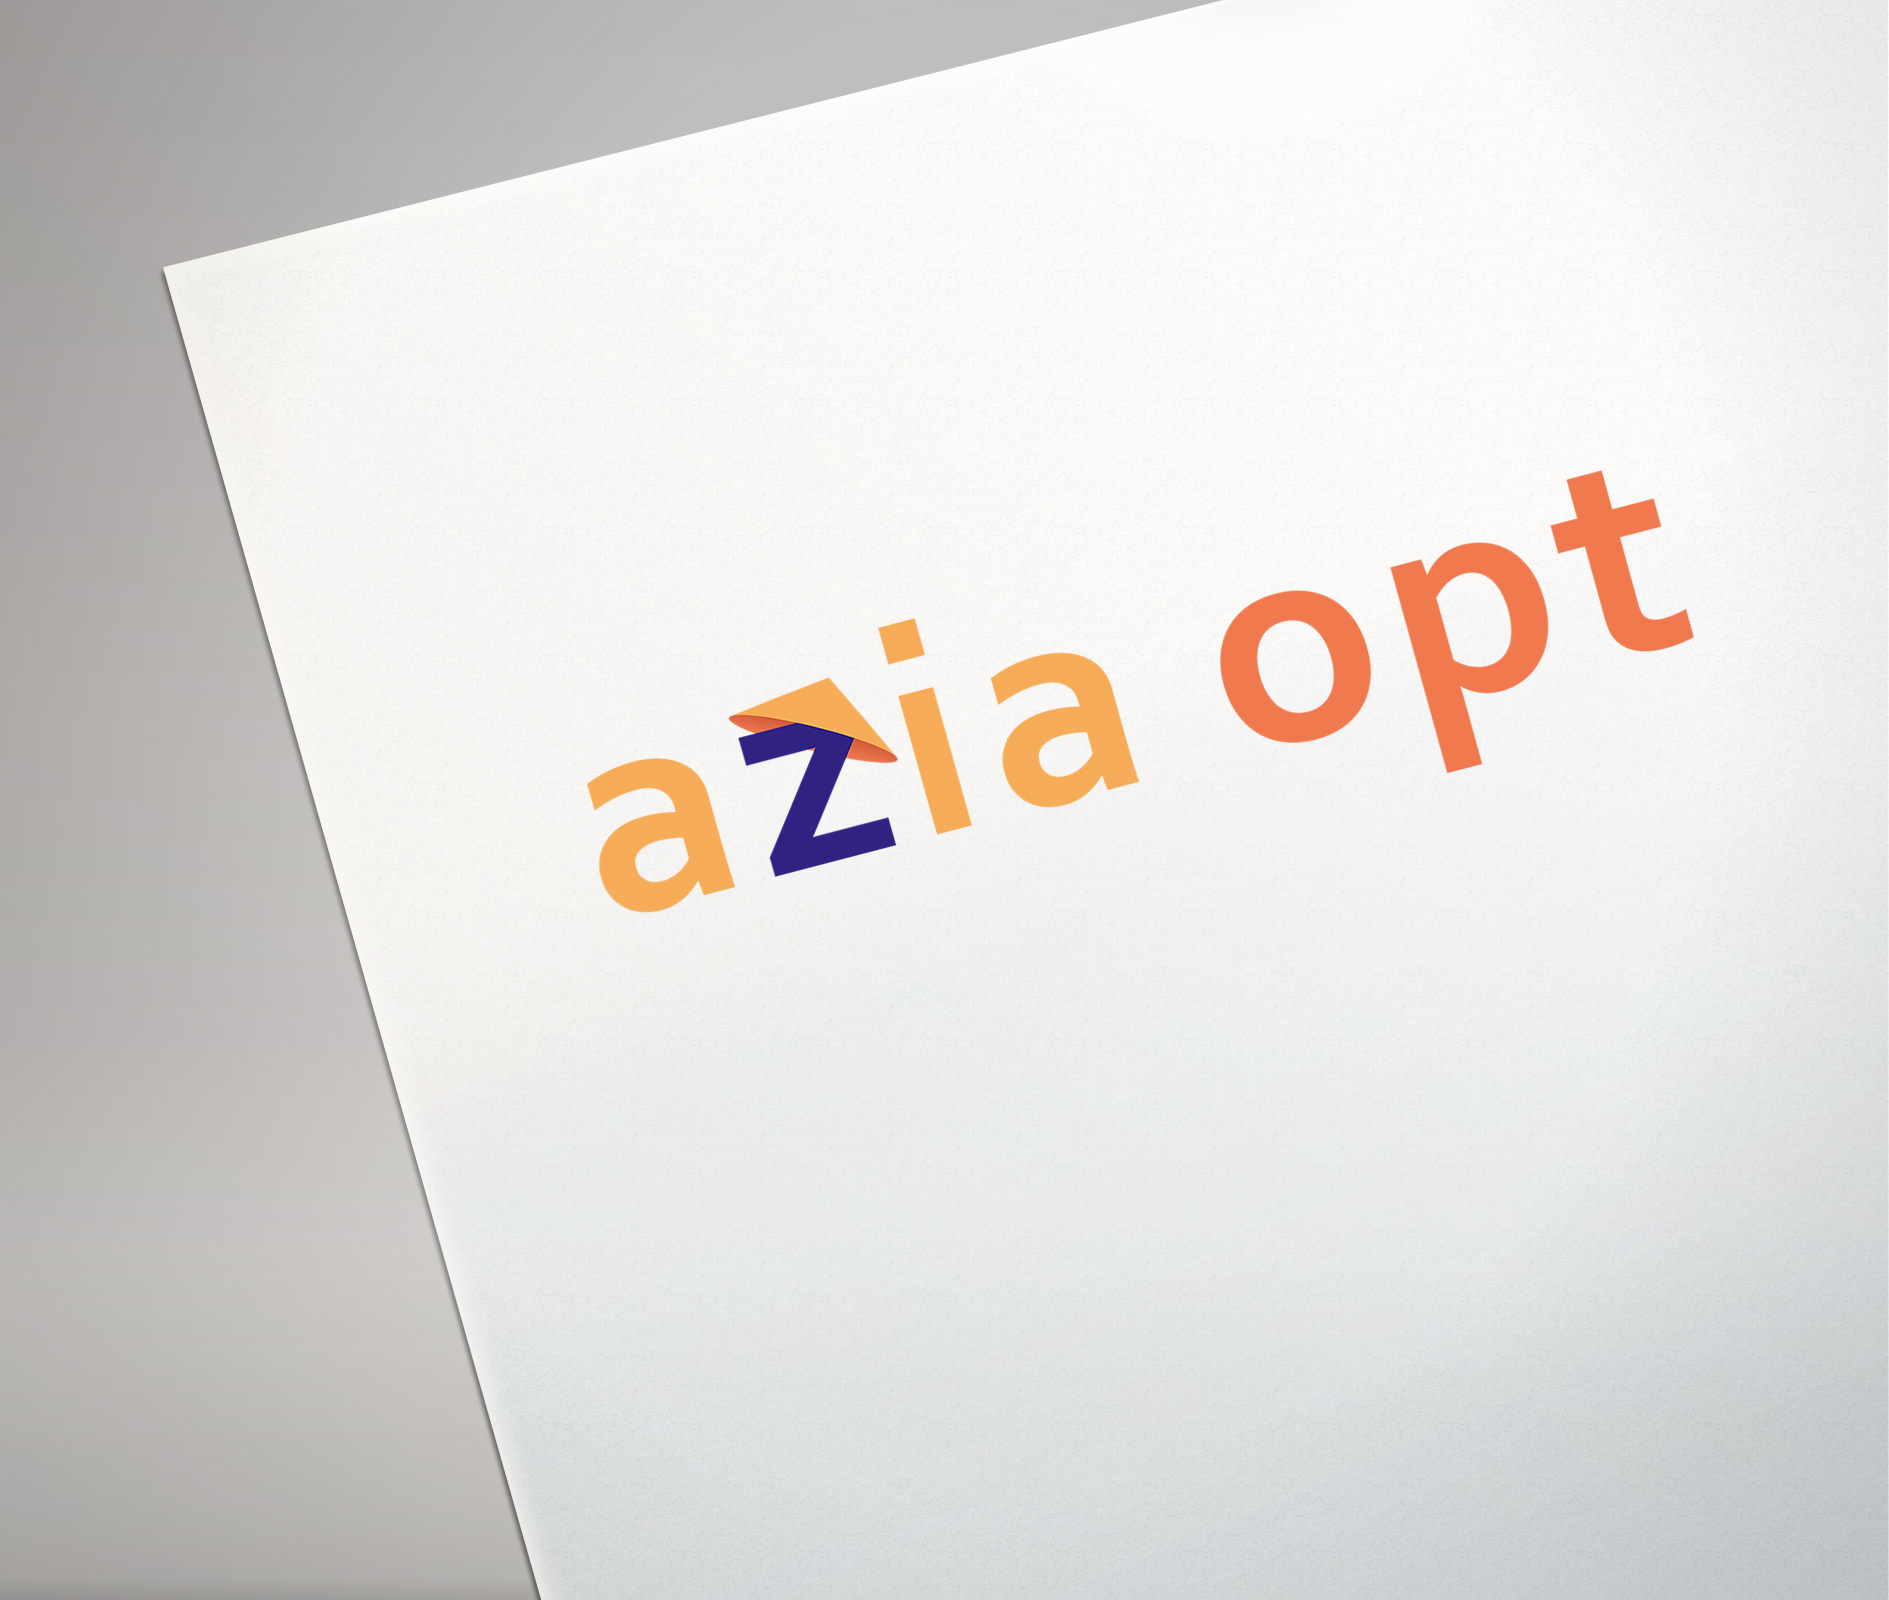 Фото Логотип "Azia opt"